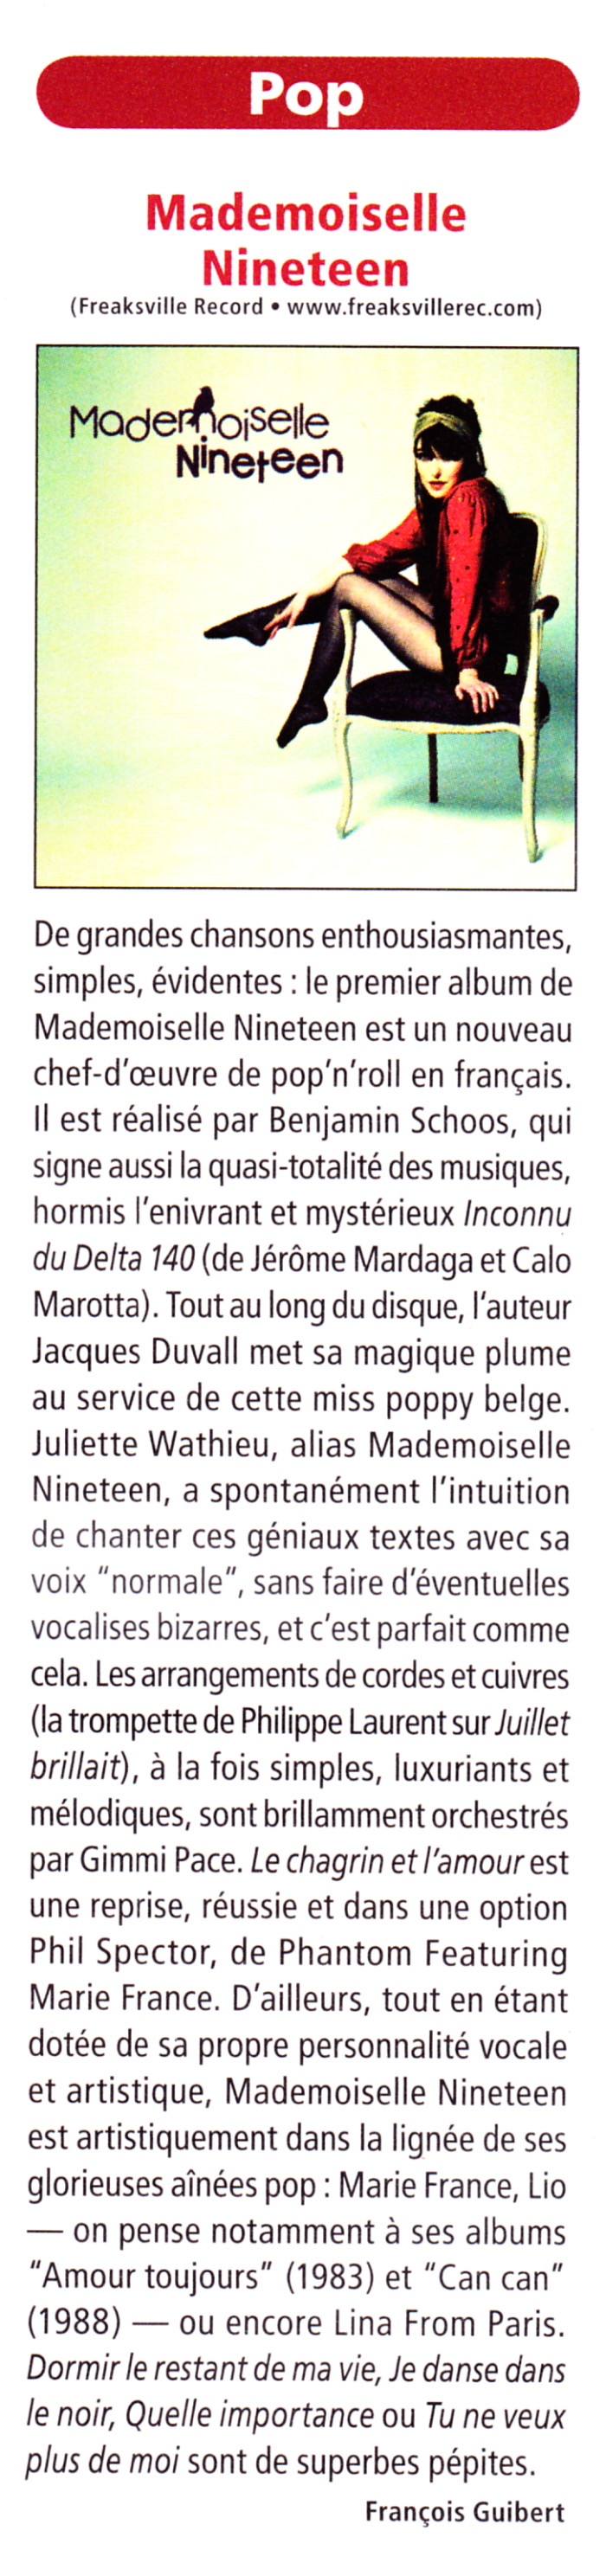 MARIE FRANCE & LES FANTÔMES jouent l'album "39° de fièvre" 18/05/2013 Réservoir (Paris) : compte rendu 13111102562416724011722795